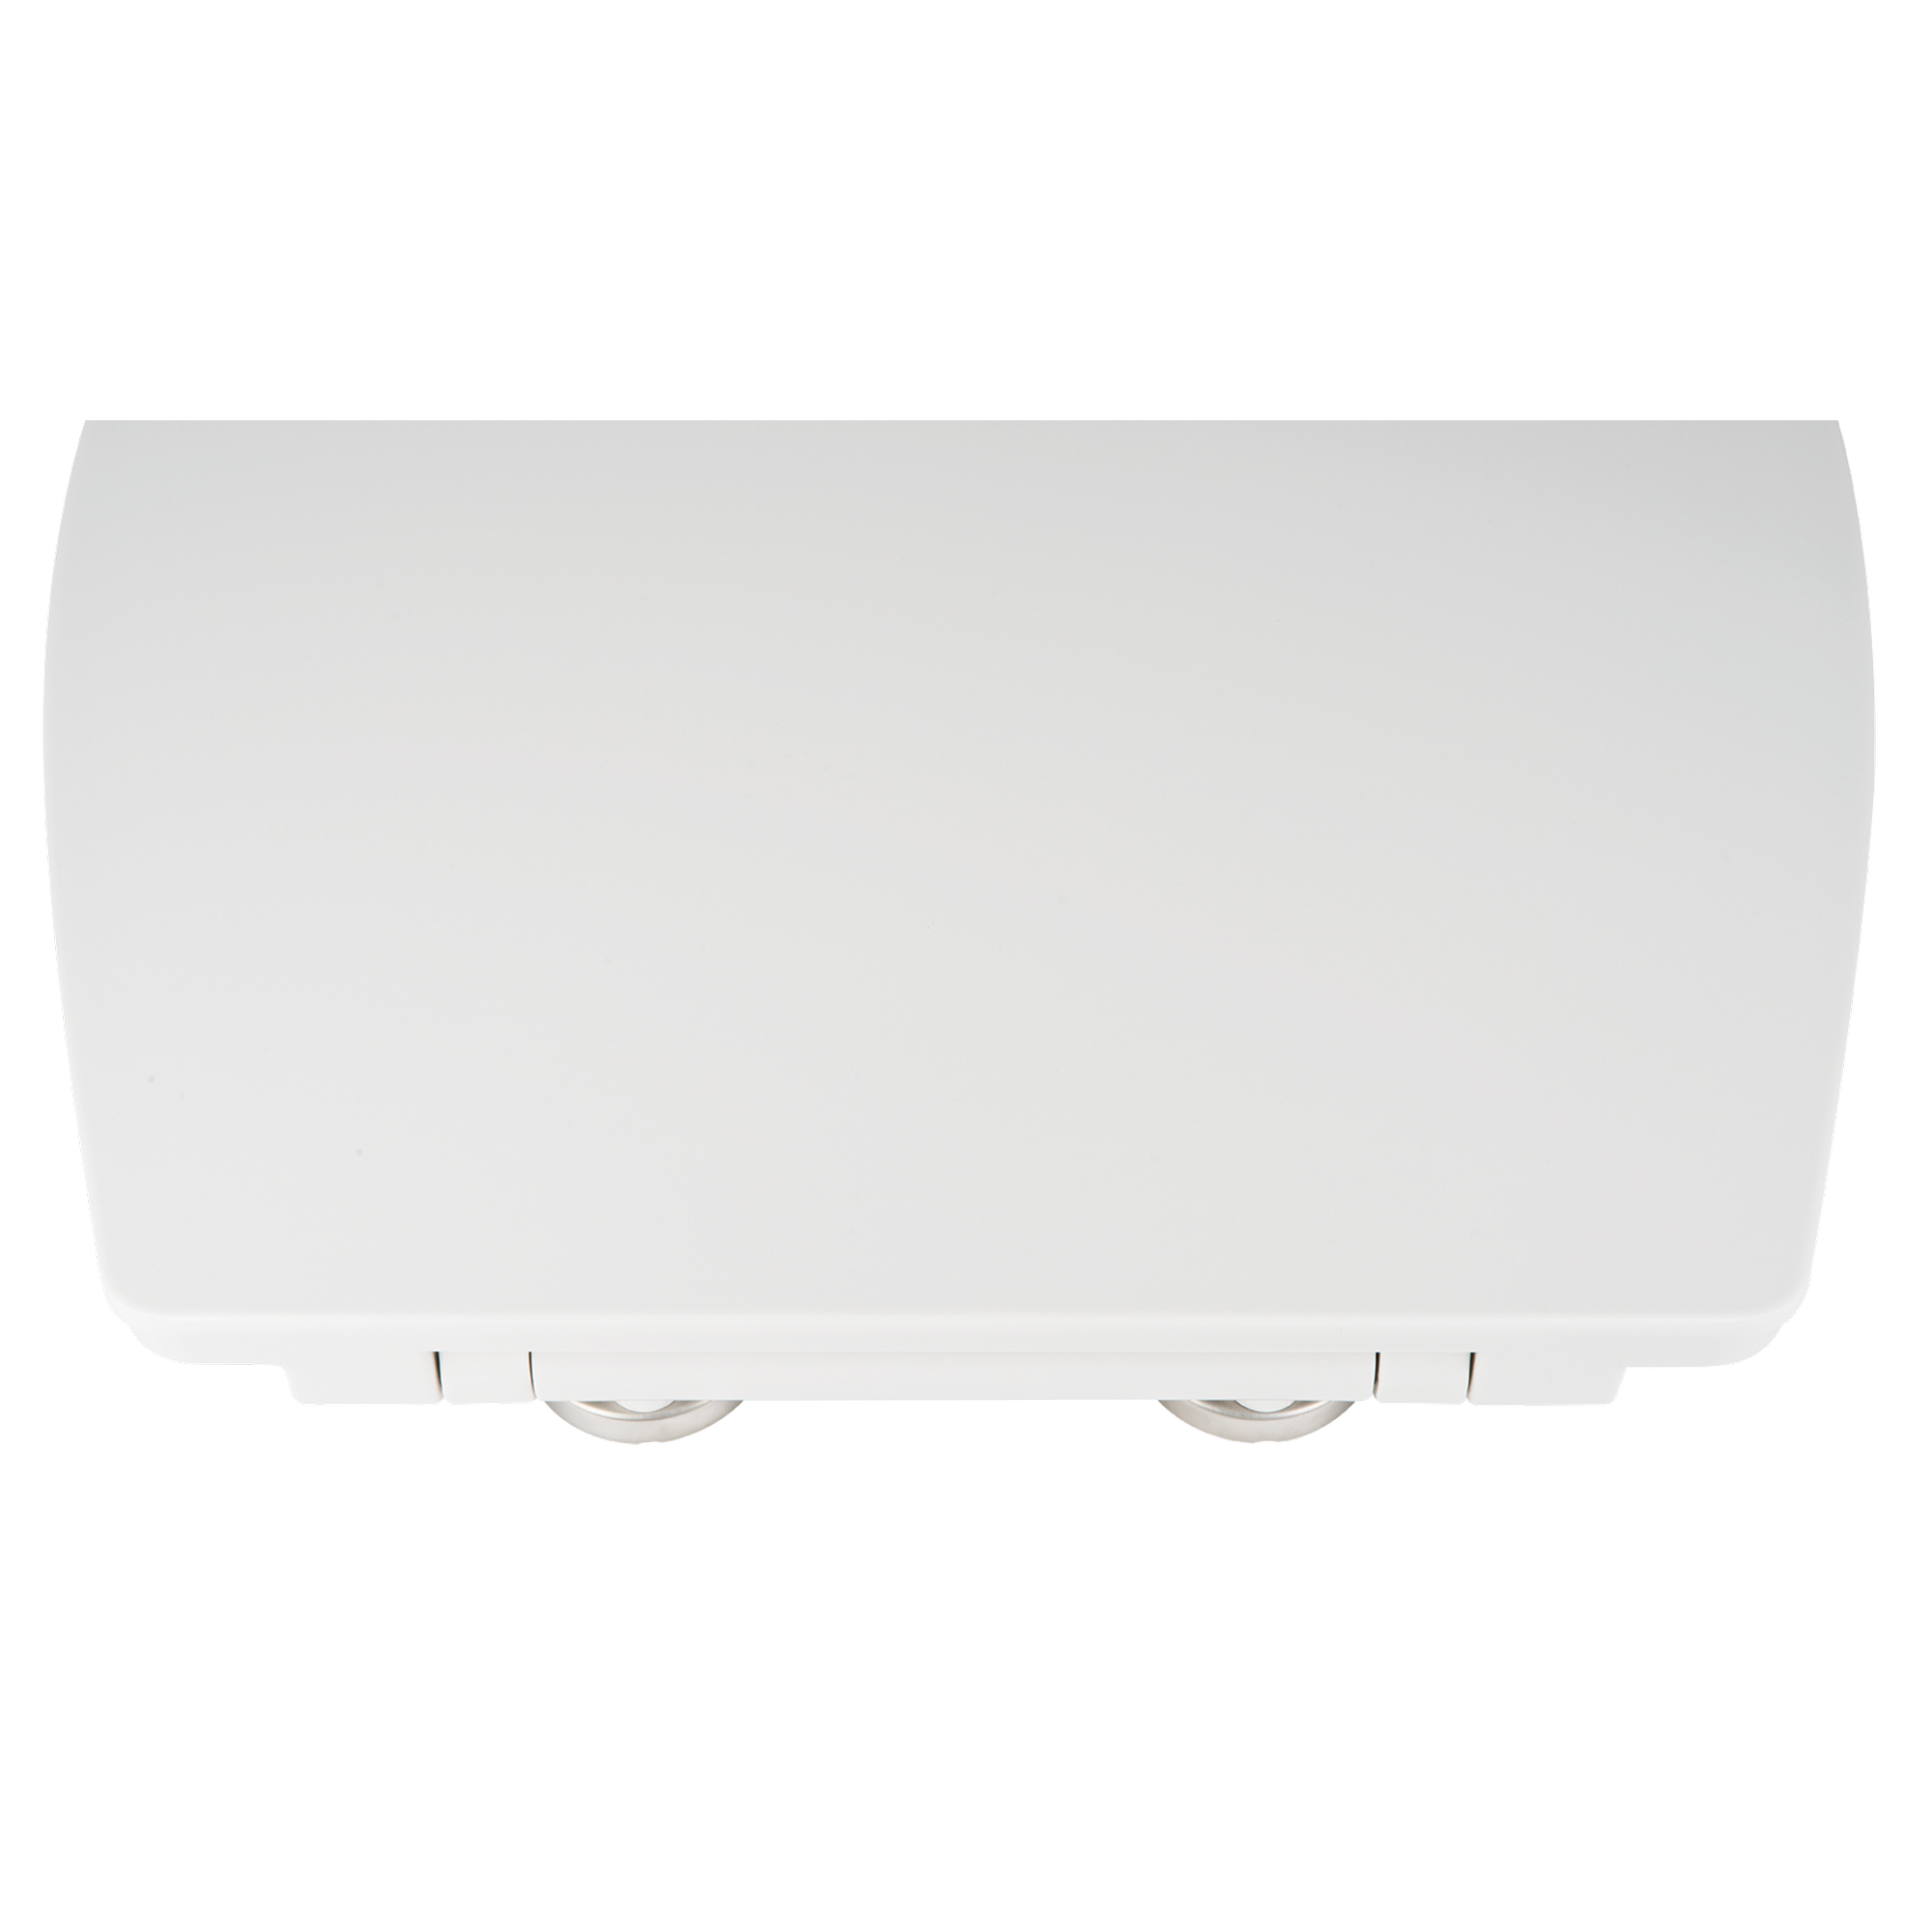 WC-Sitz 'Memphis' mit LED-Nachtlicht und Absenkautomatik, weiß + product picture